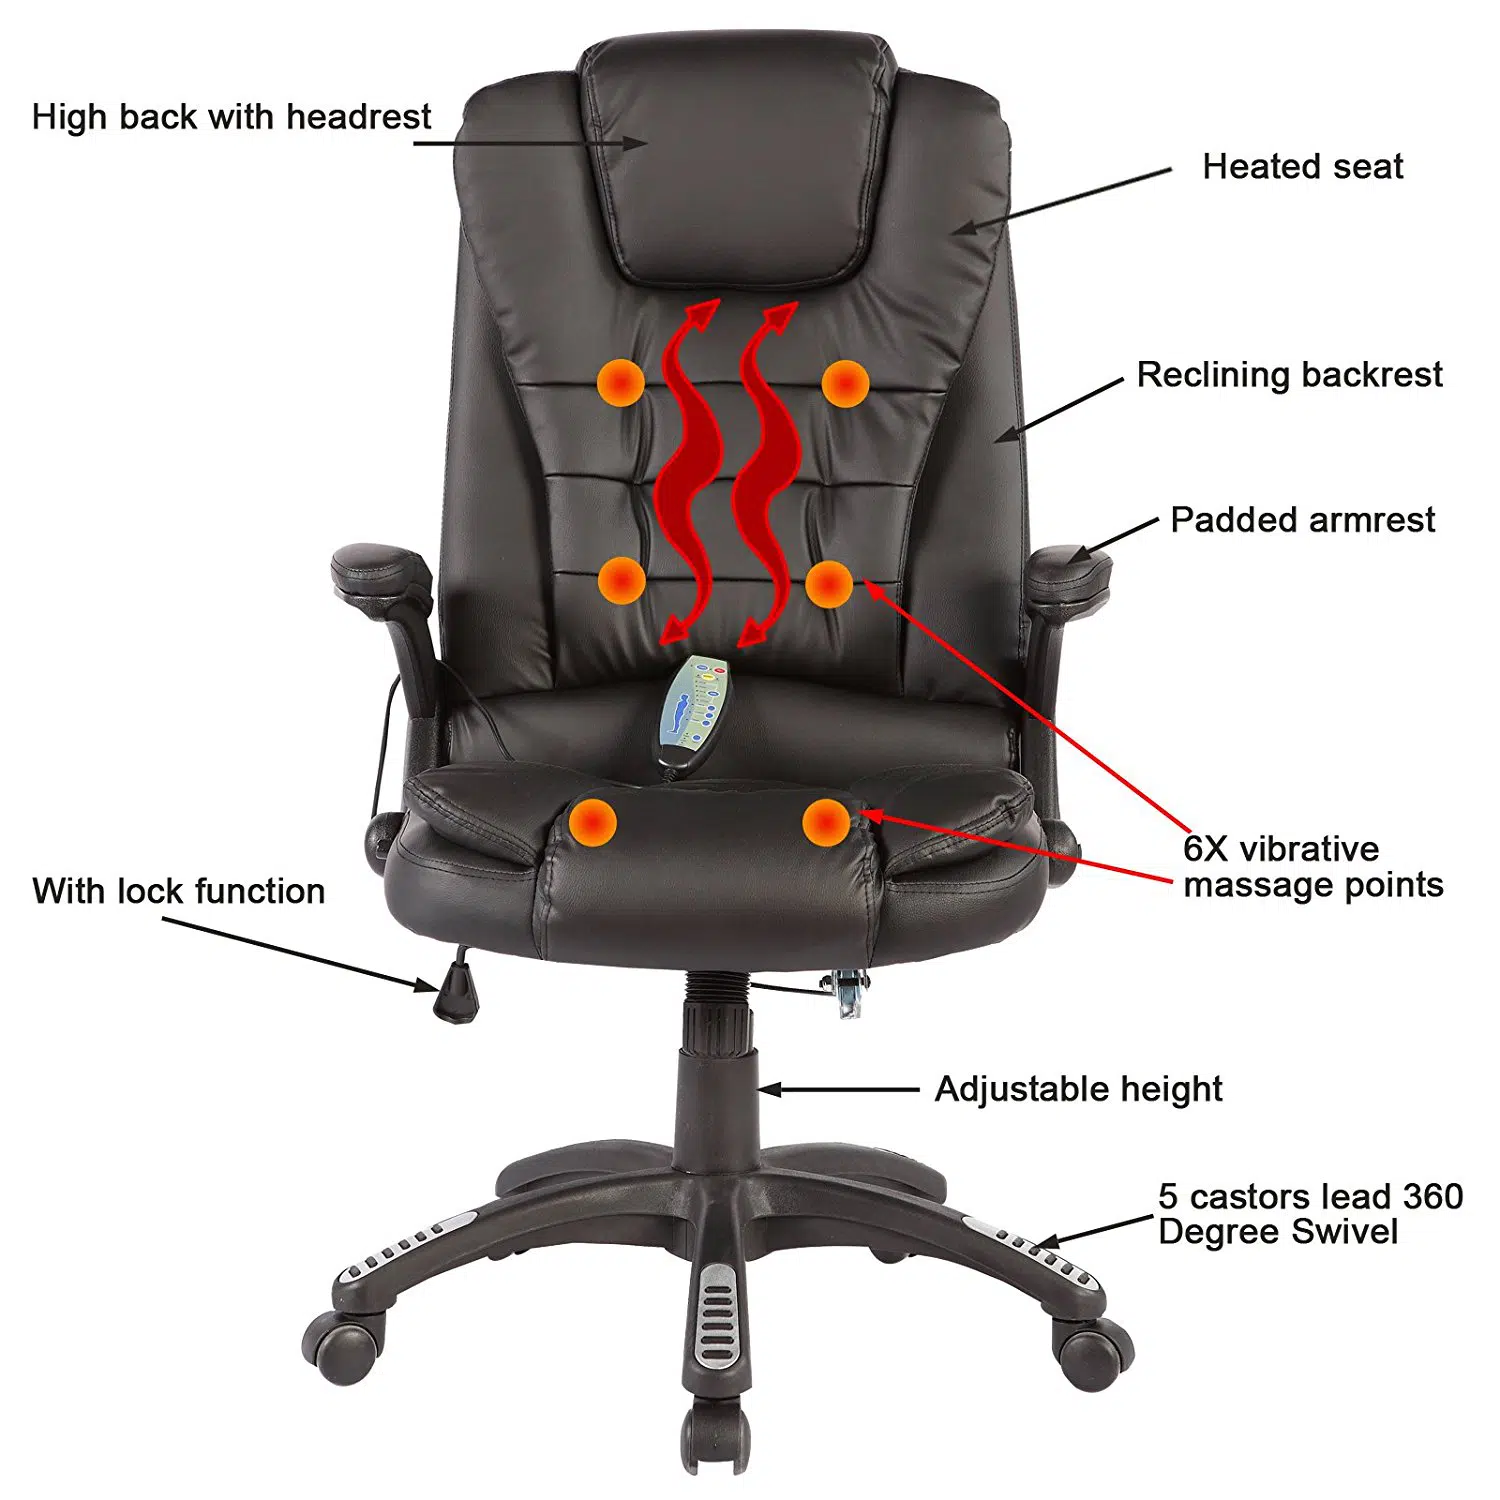 Mecor-office-heated-chair